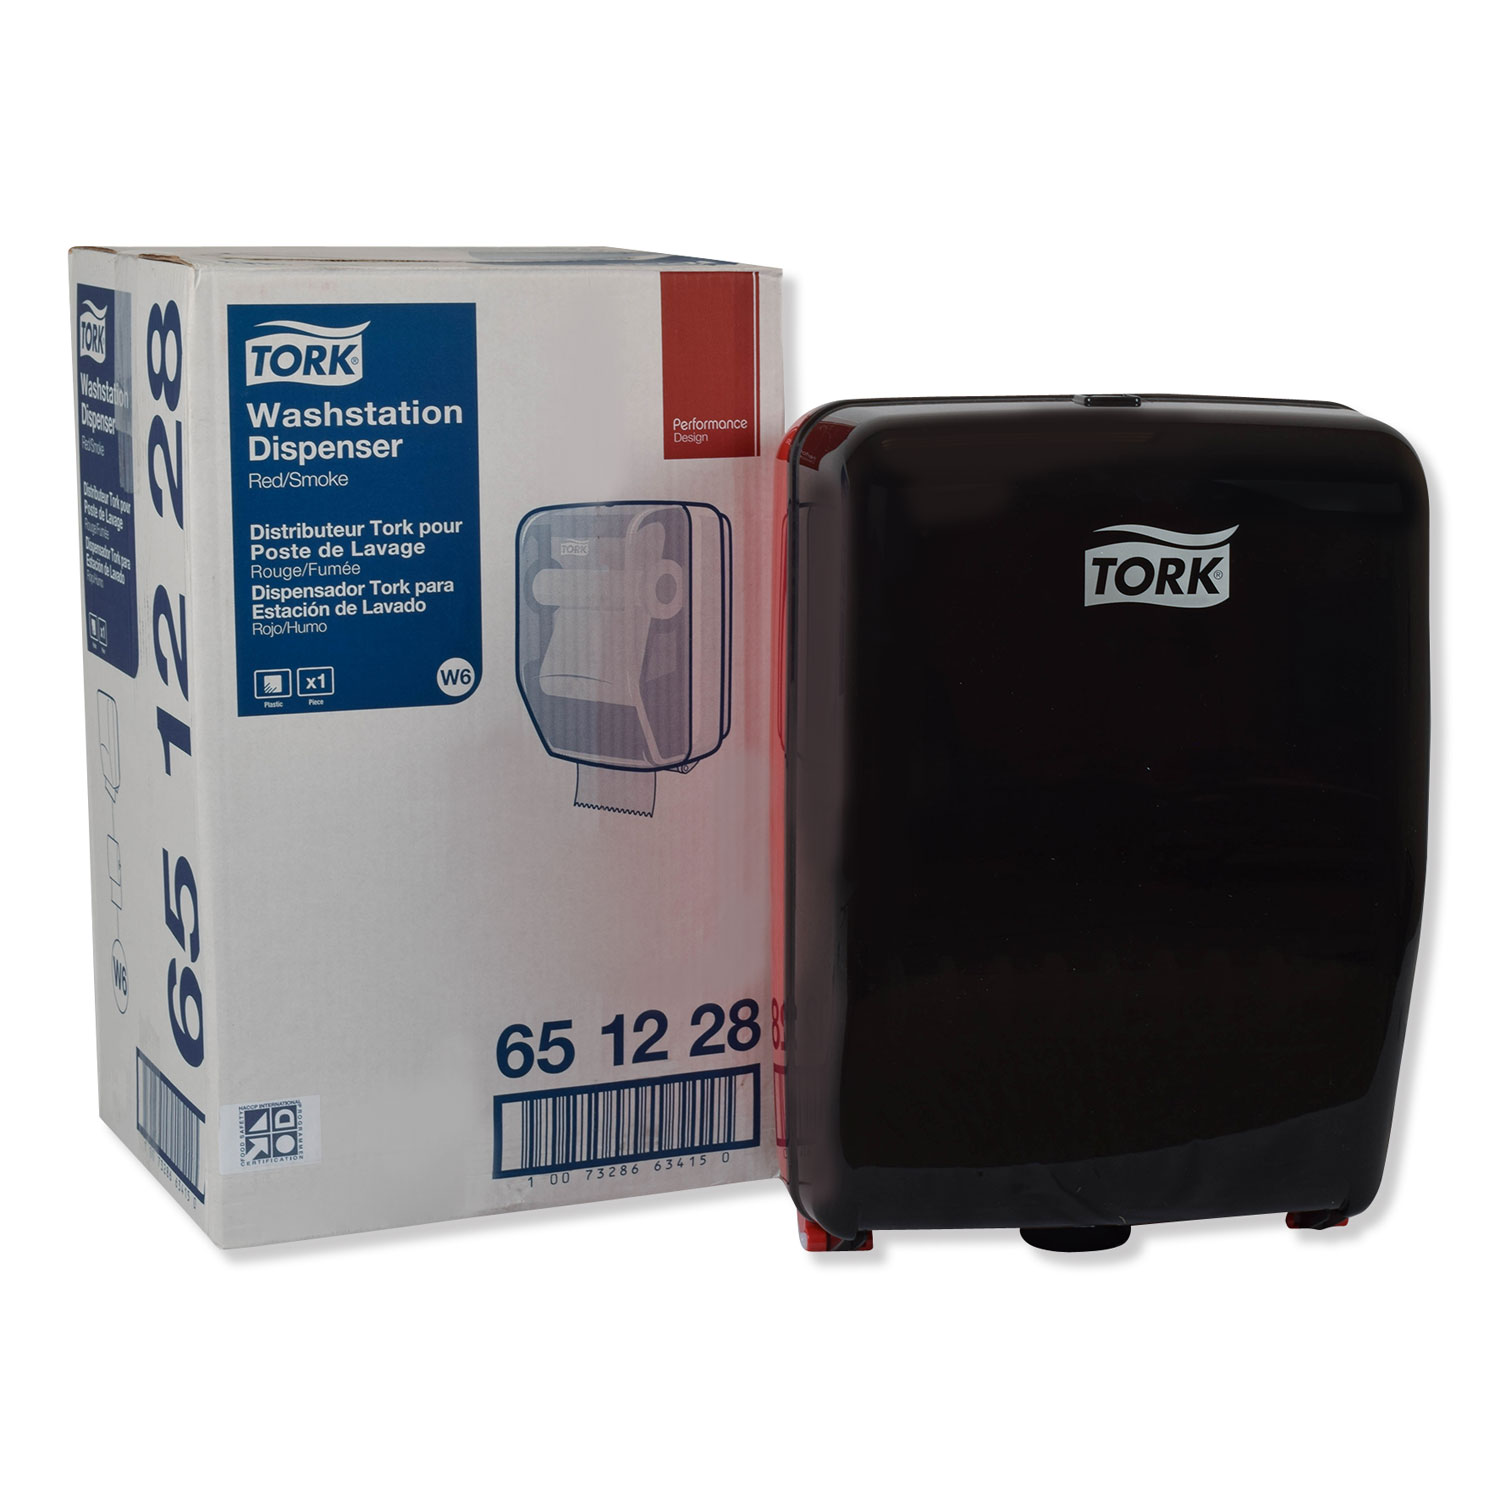  Tork 651228 Washstation Dispenser, 12.56 x 18.09 x 10.57, Red/Black (TRK651228) 